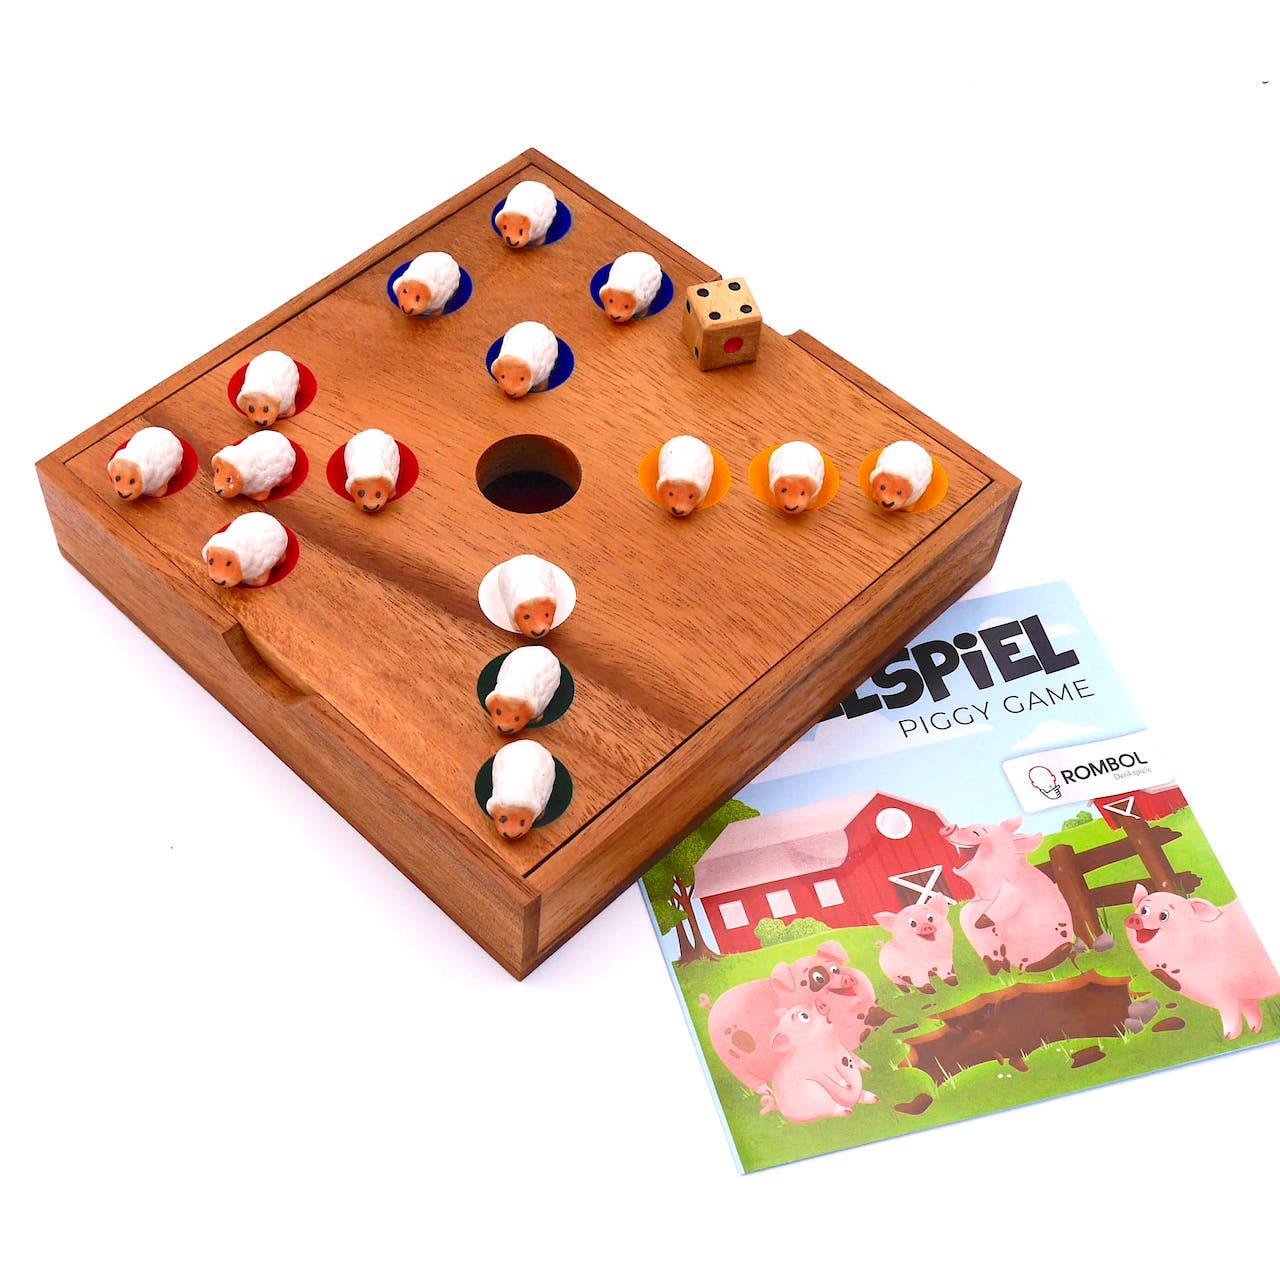 Ferkelspiel - Das Würfelspiel mit den süßen Tierfiguren für die ganze Familie inkl. praktischem Verschlussband